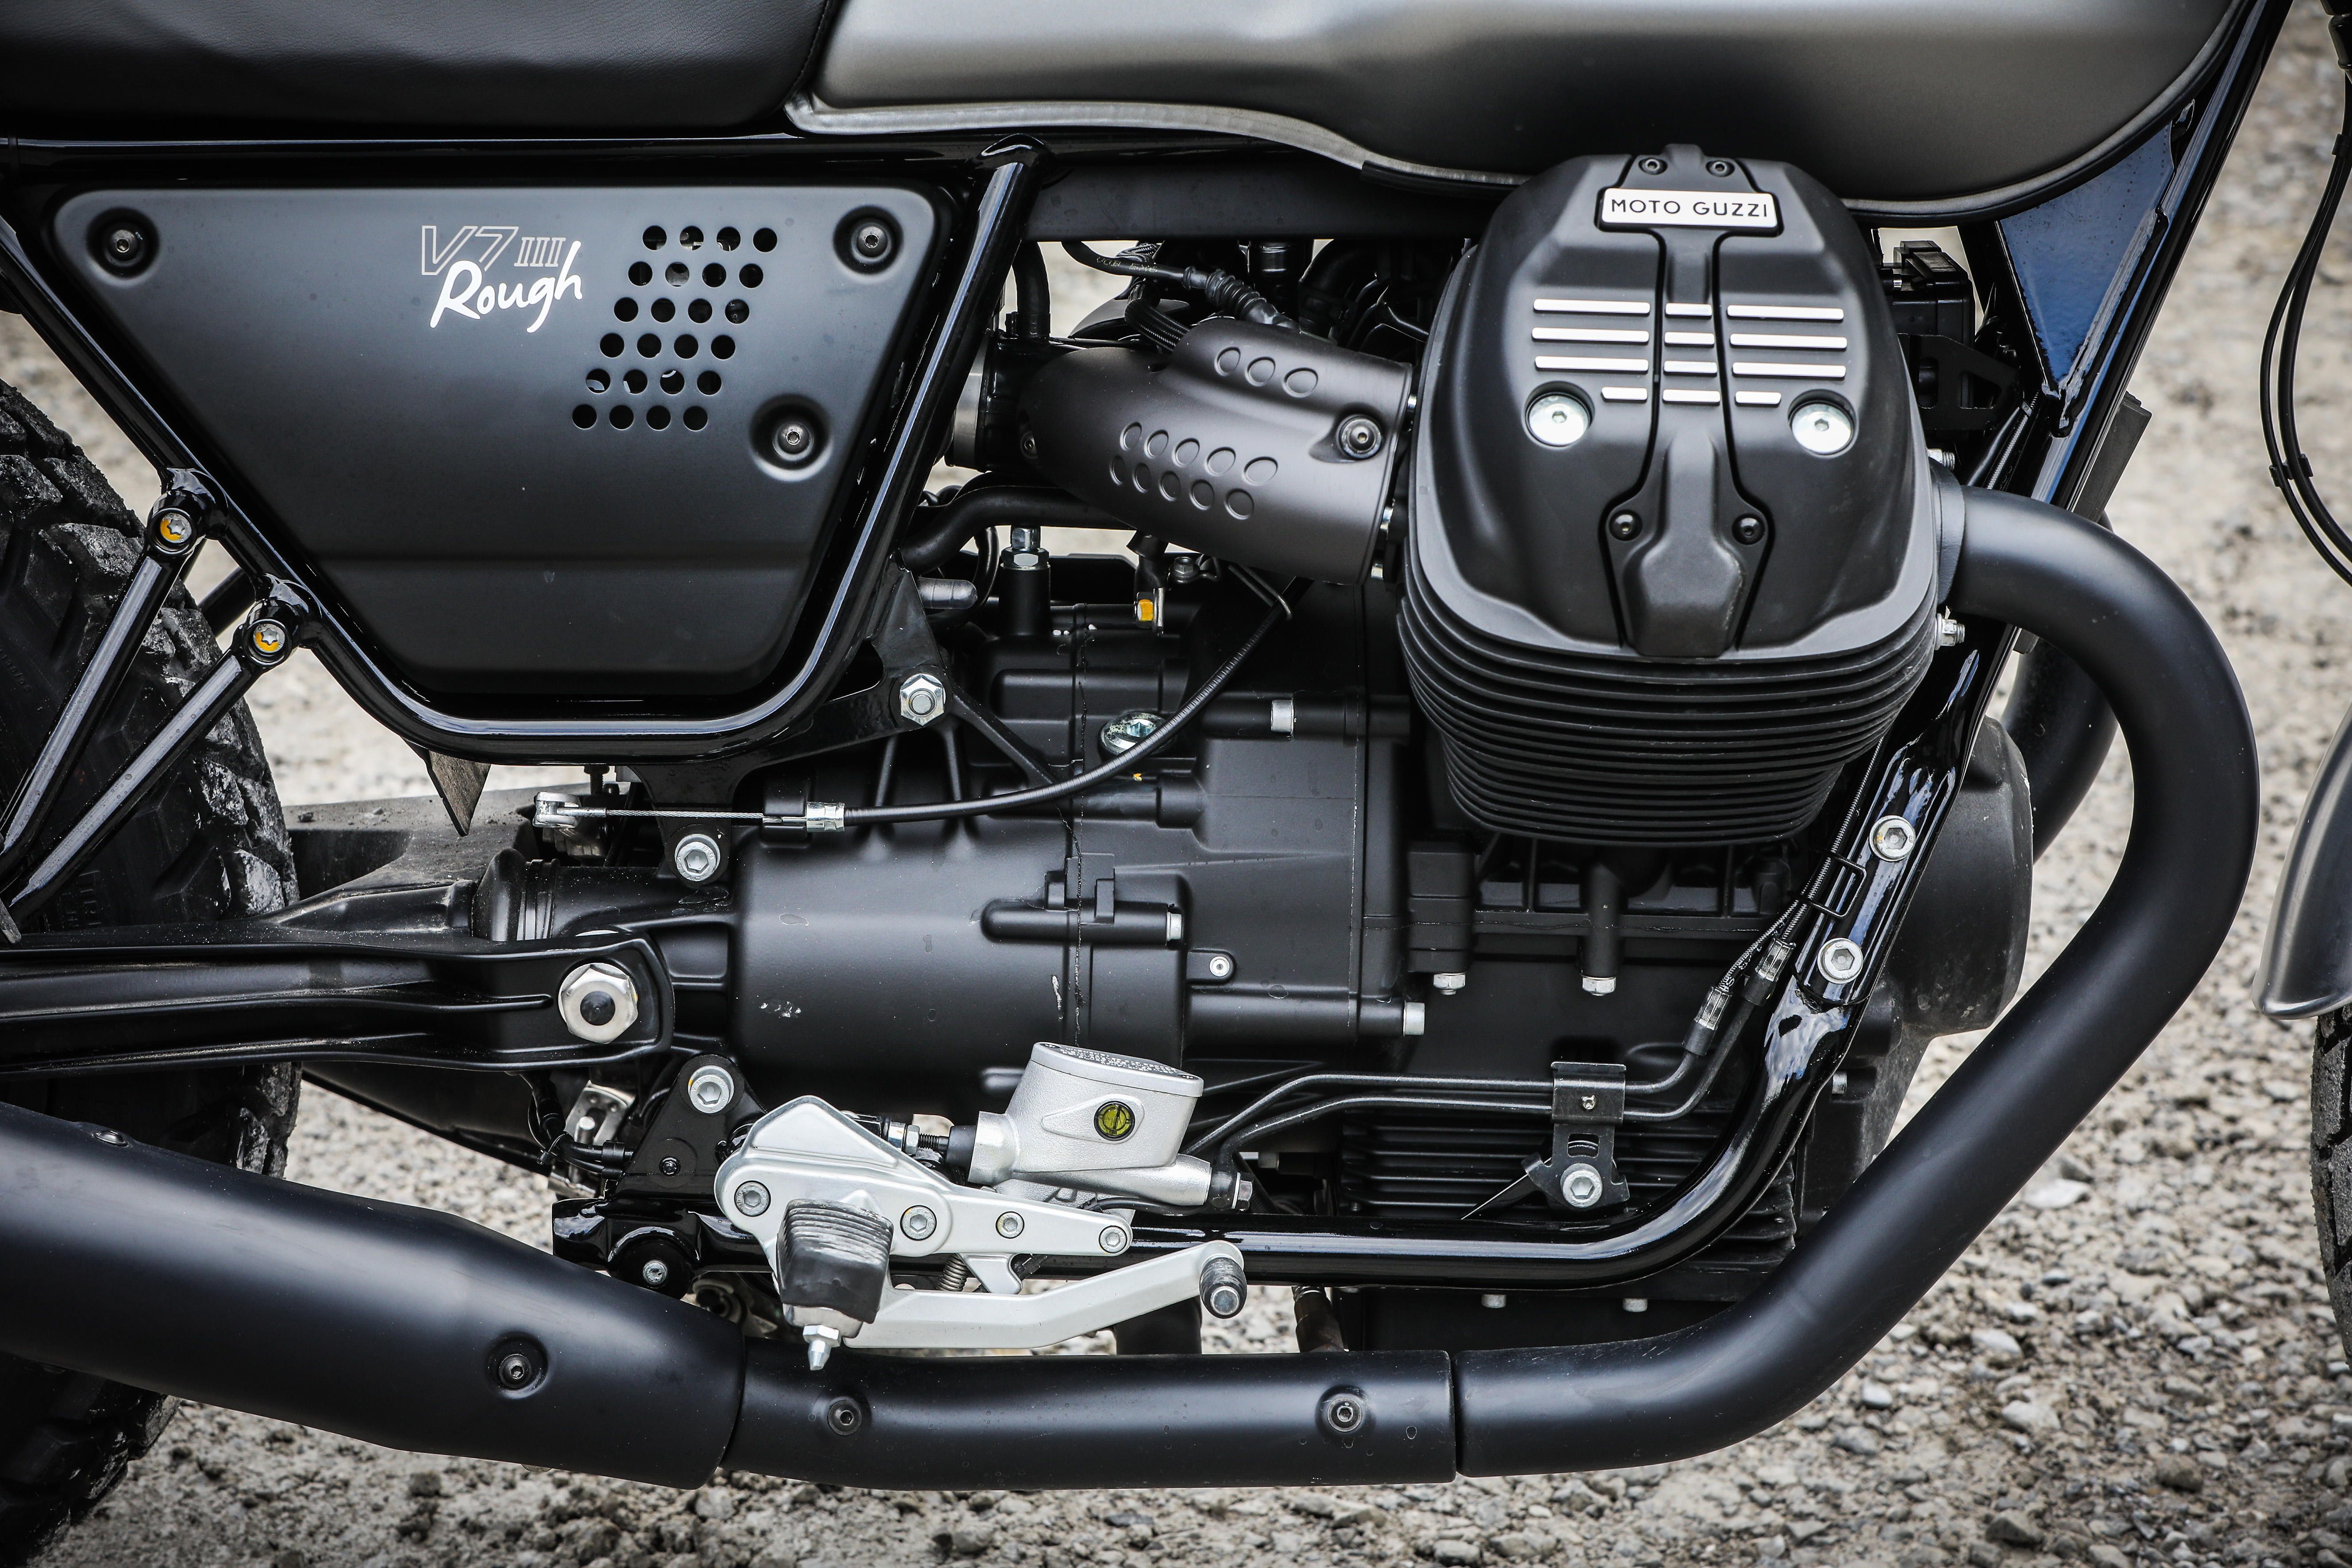 2018 - 2020 Moto Guzzi V7 III Rough